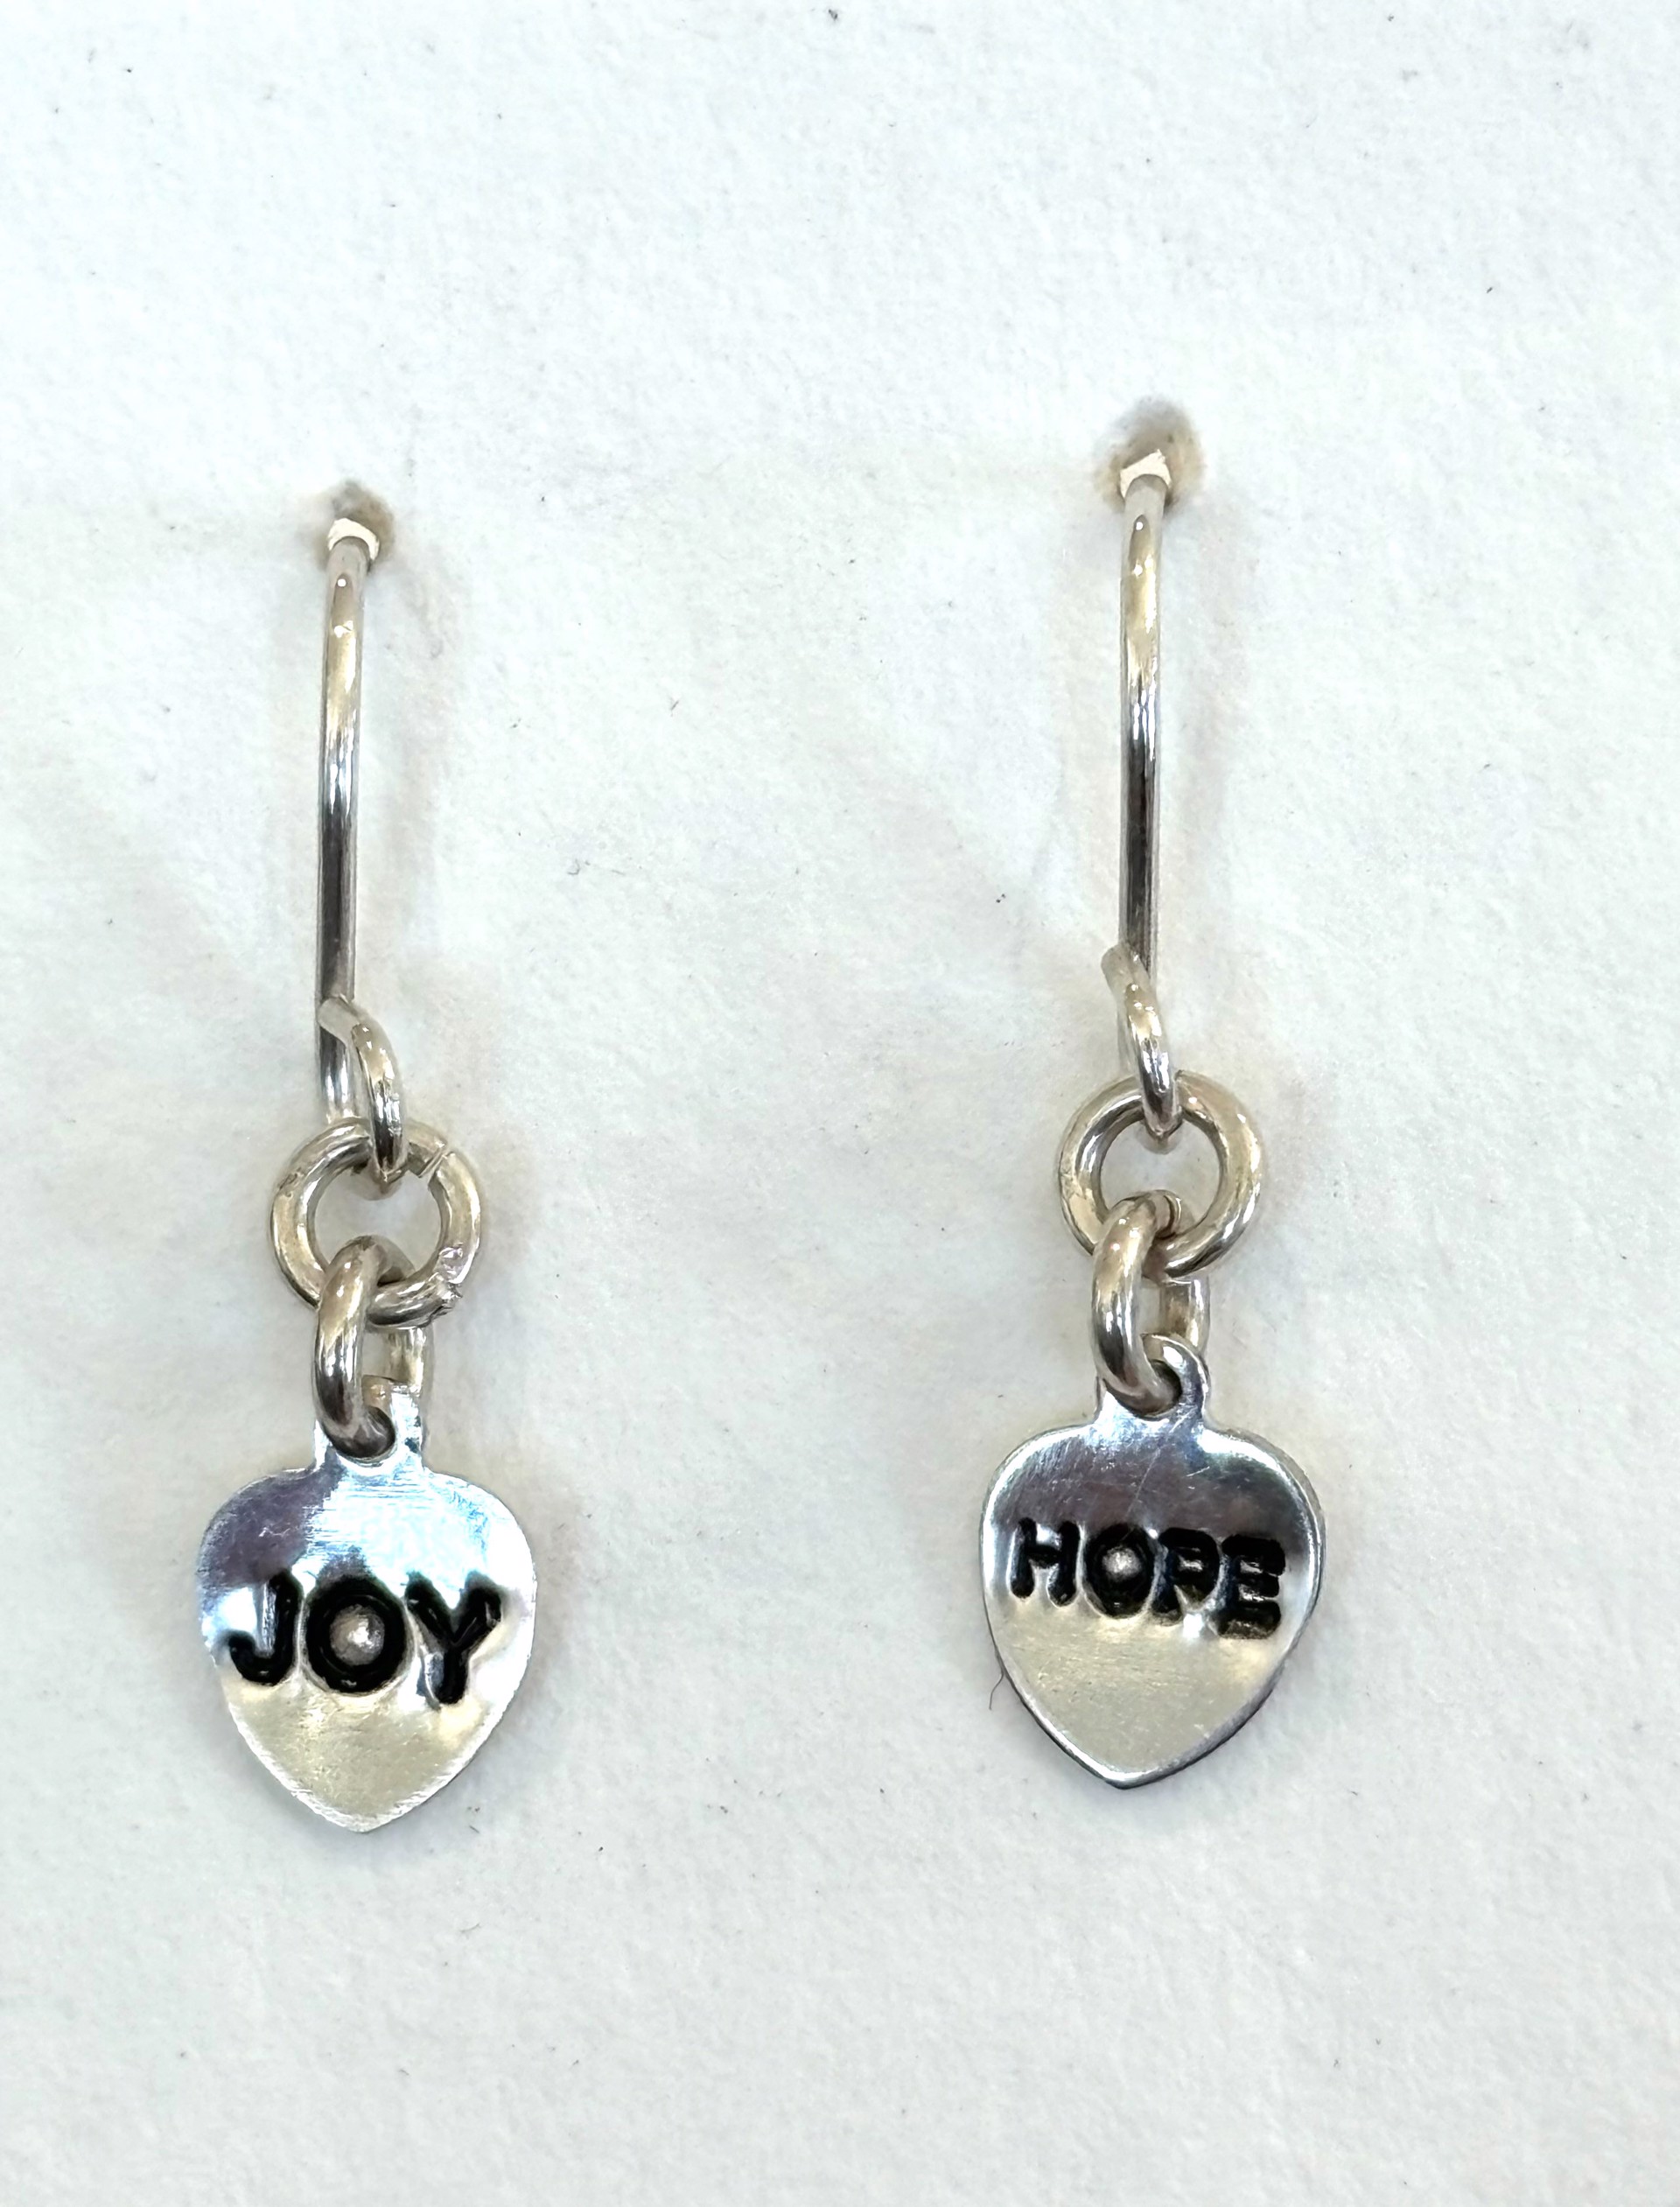 Joy Hope Mantra Earrings by Emelie Hebert